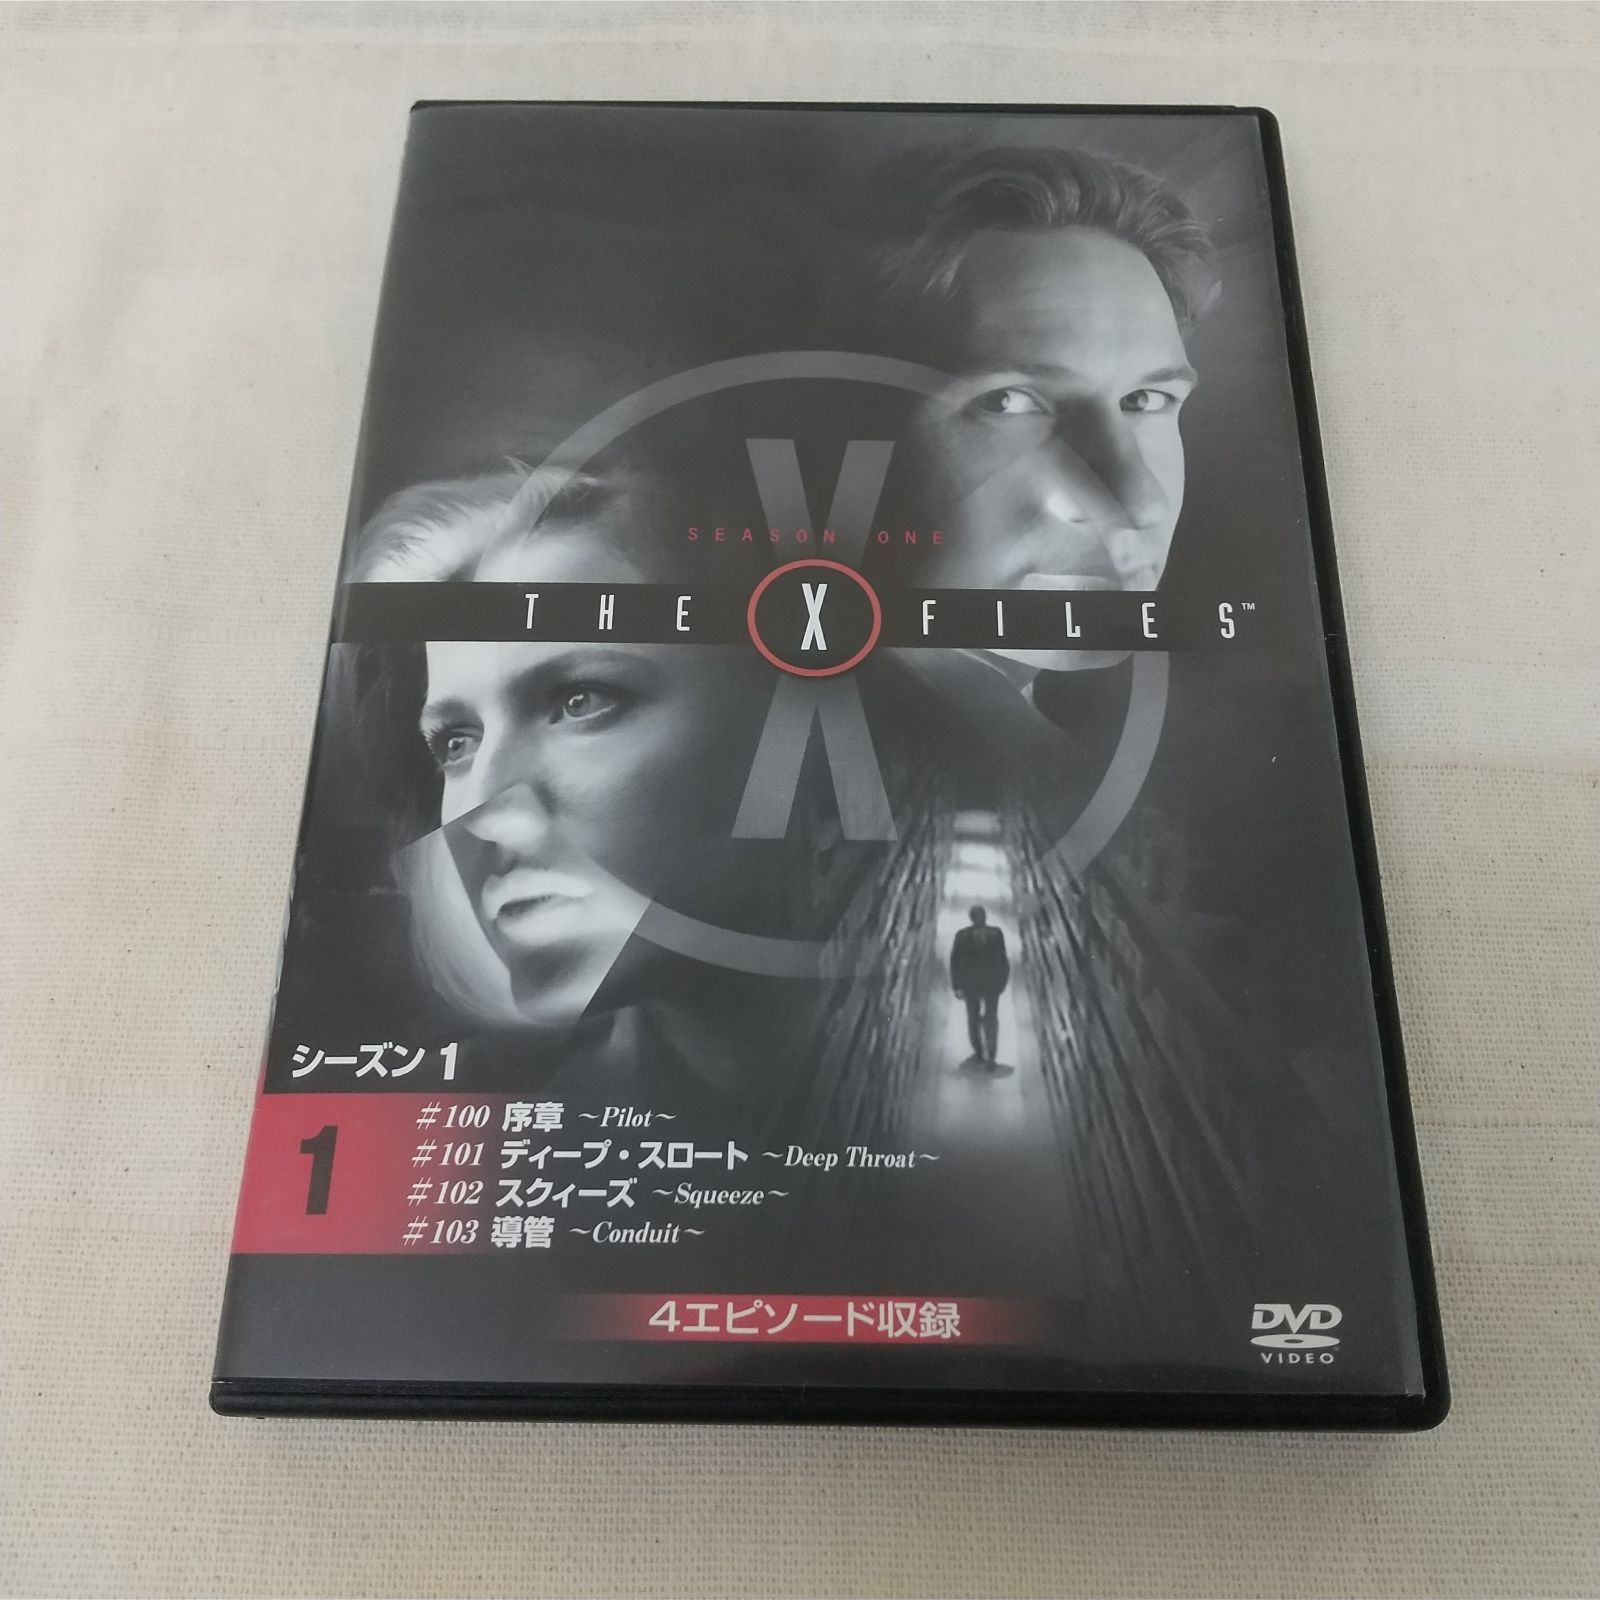 Xファイル シーズン1 DVDコレクション1 4エピソード収録 - TVドラマ